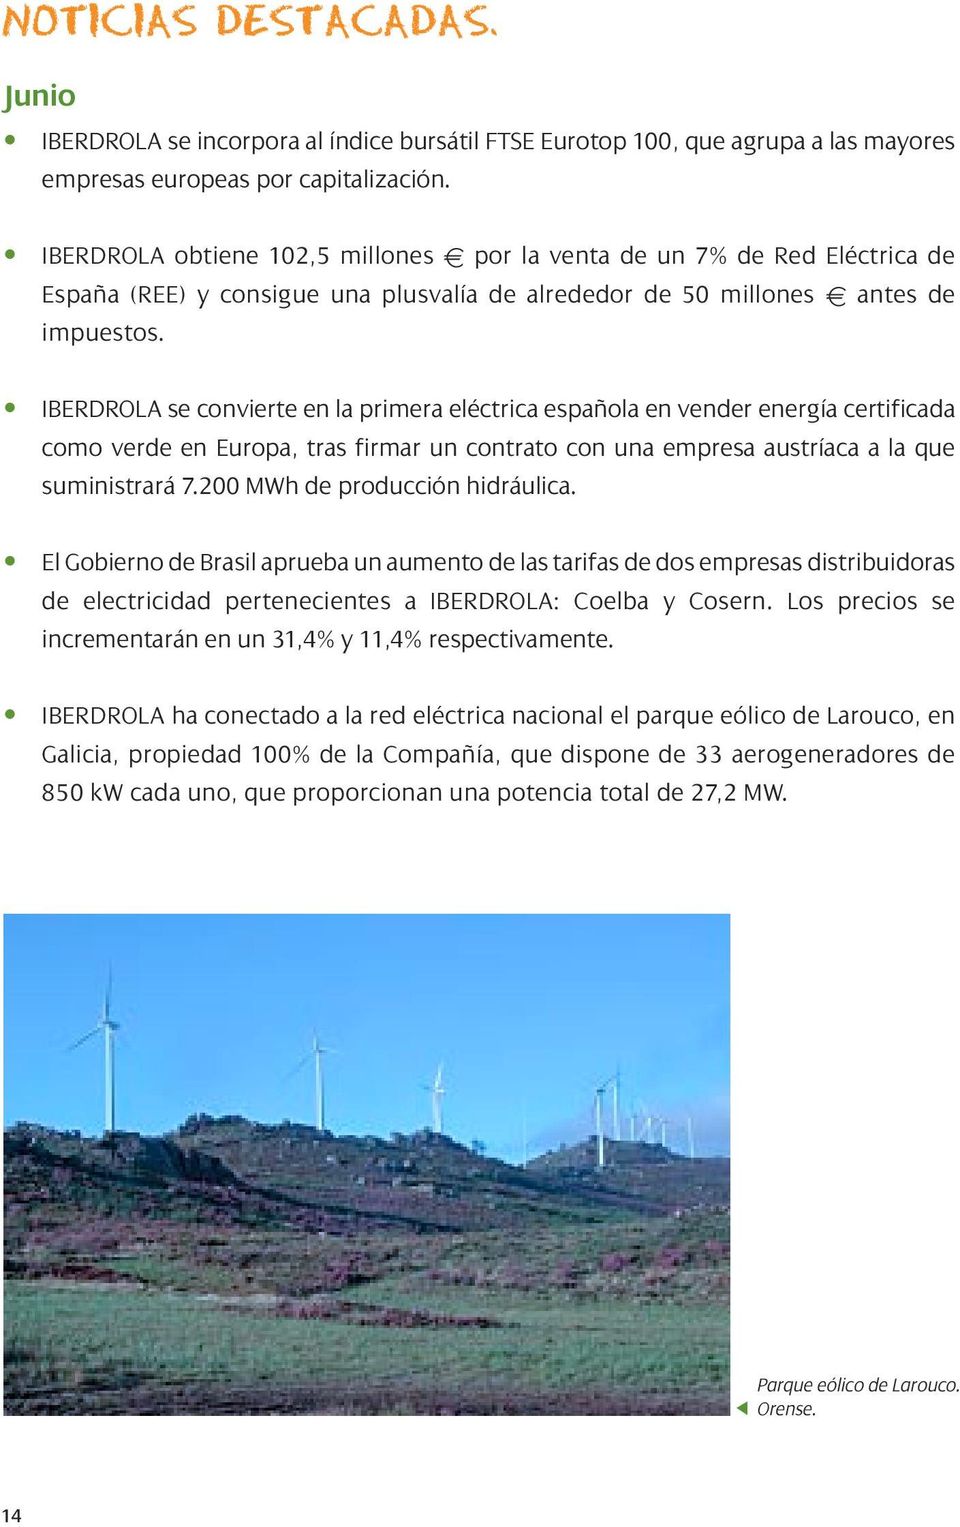 IBERDROLA se convierte en la primera eléctrica española en vender energía certificada como verde en Europa, tras firmar un contrato con una empresa austríaca a la que suministrará 7.